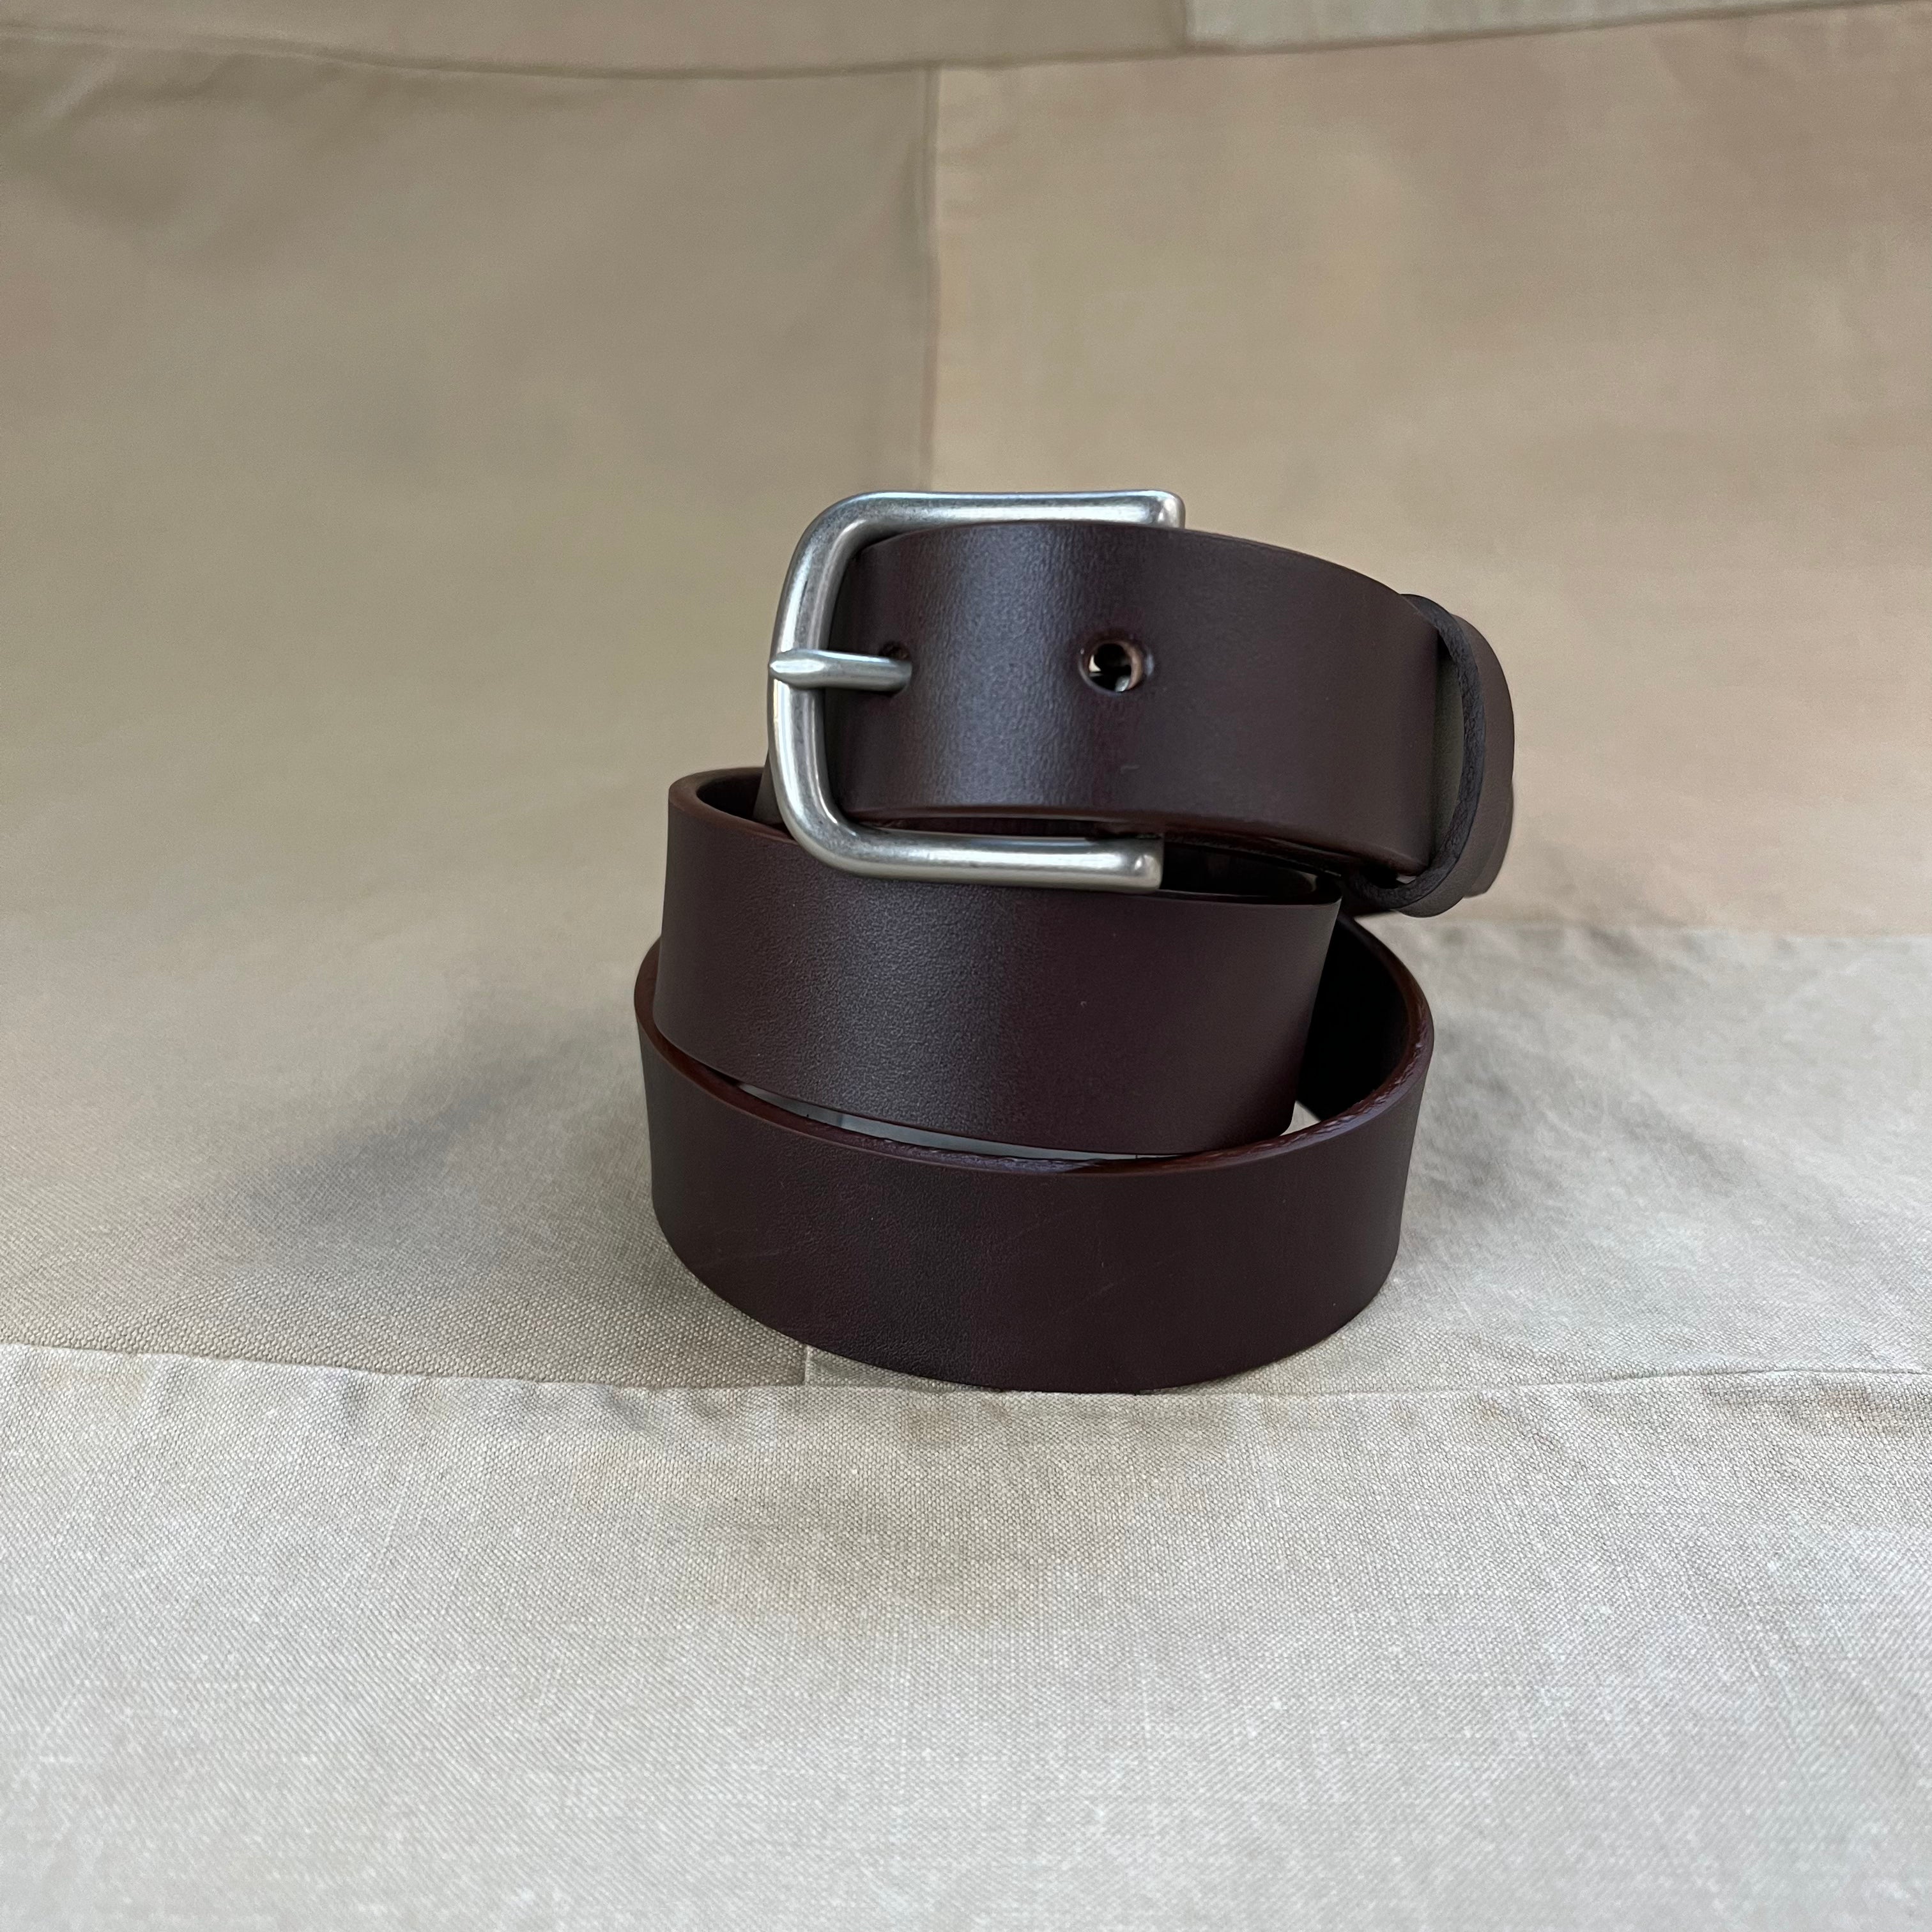 Belt 1.25 Web Black or Olive Drab Belt & Buckle